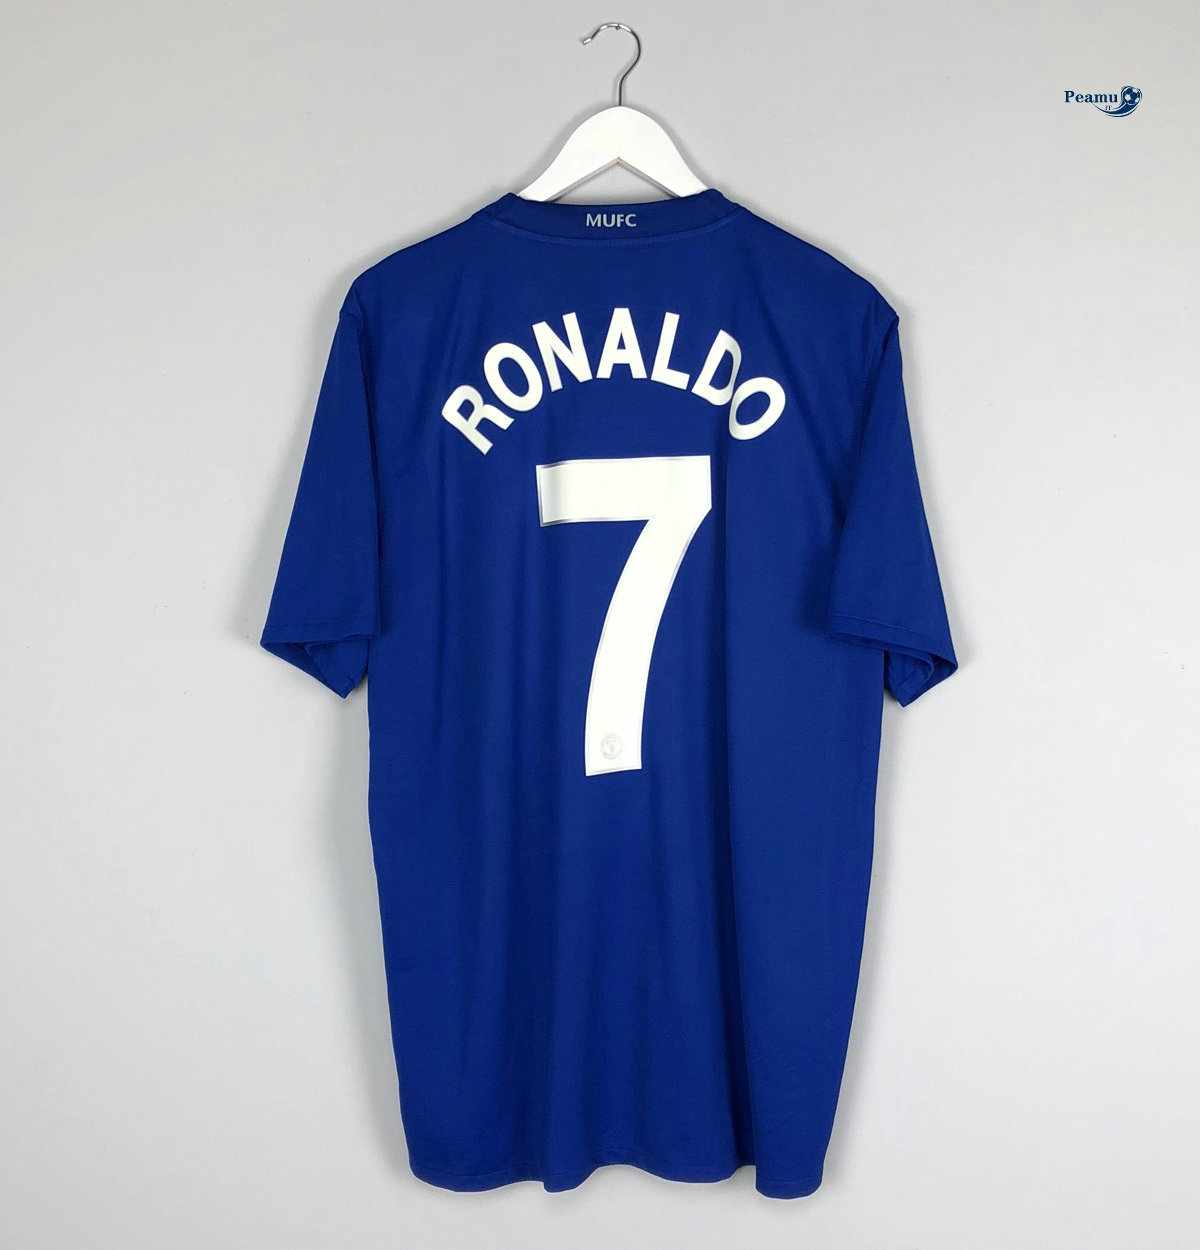 Classico Maglie Manchester United Alternativa Equipamento Azul clair (7 Cristiano Ronaldo) 2008-09